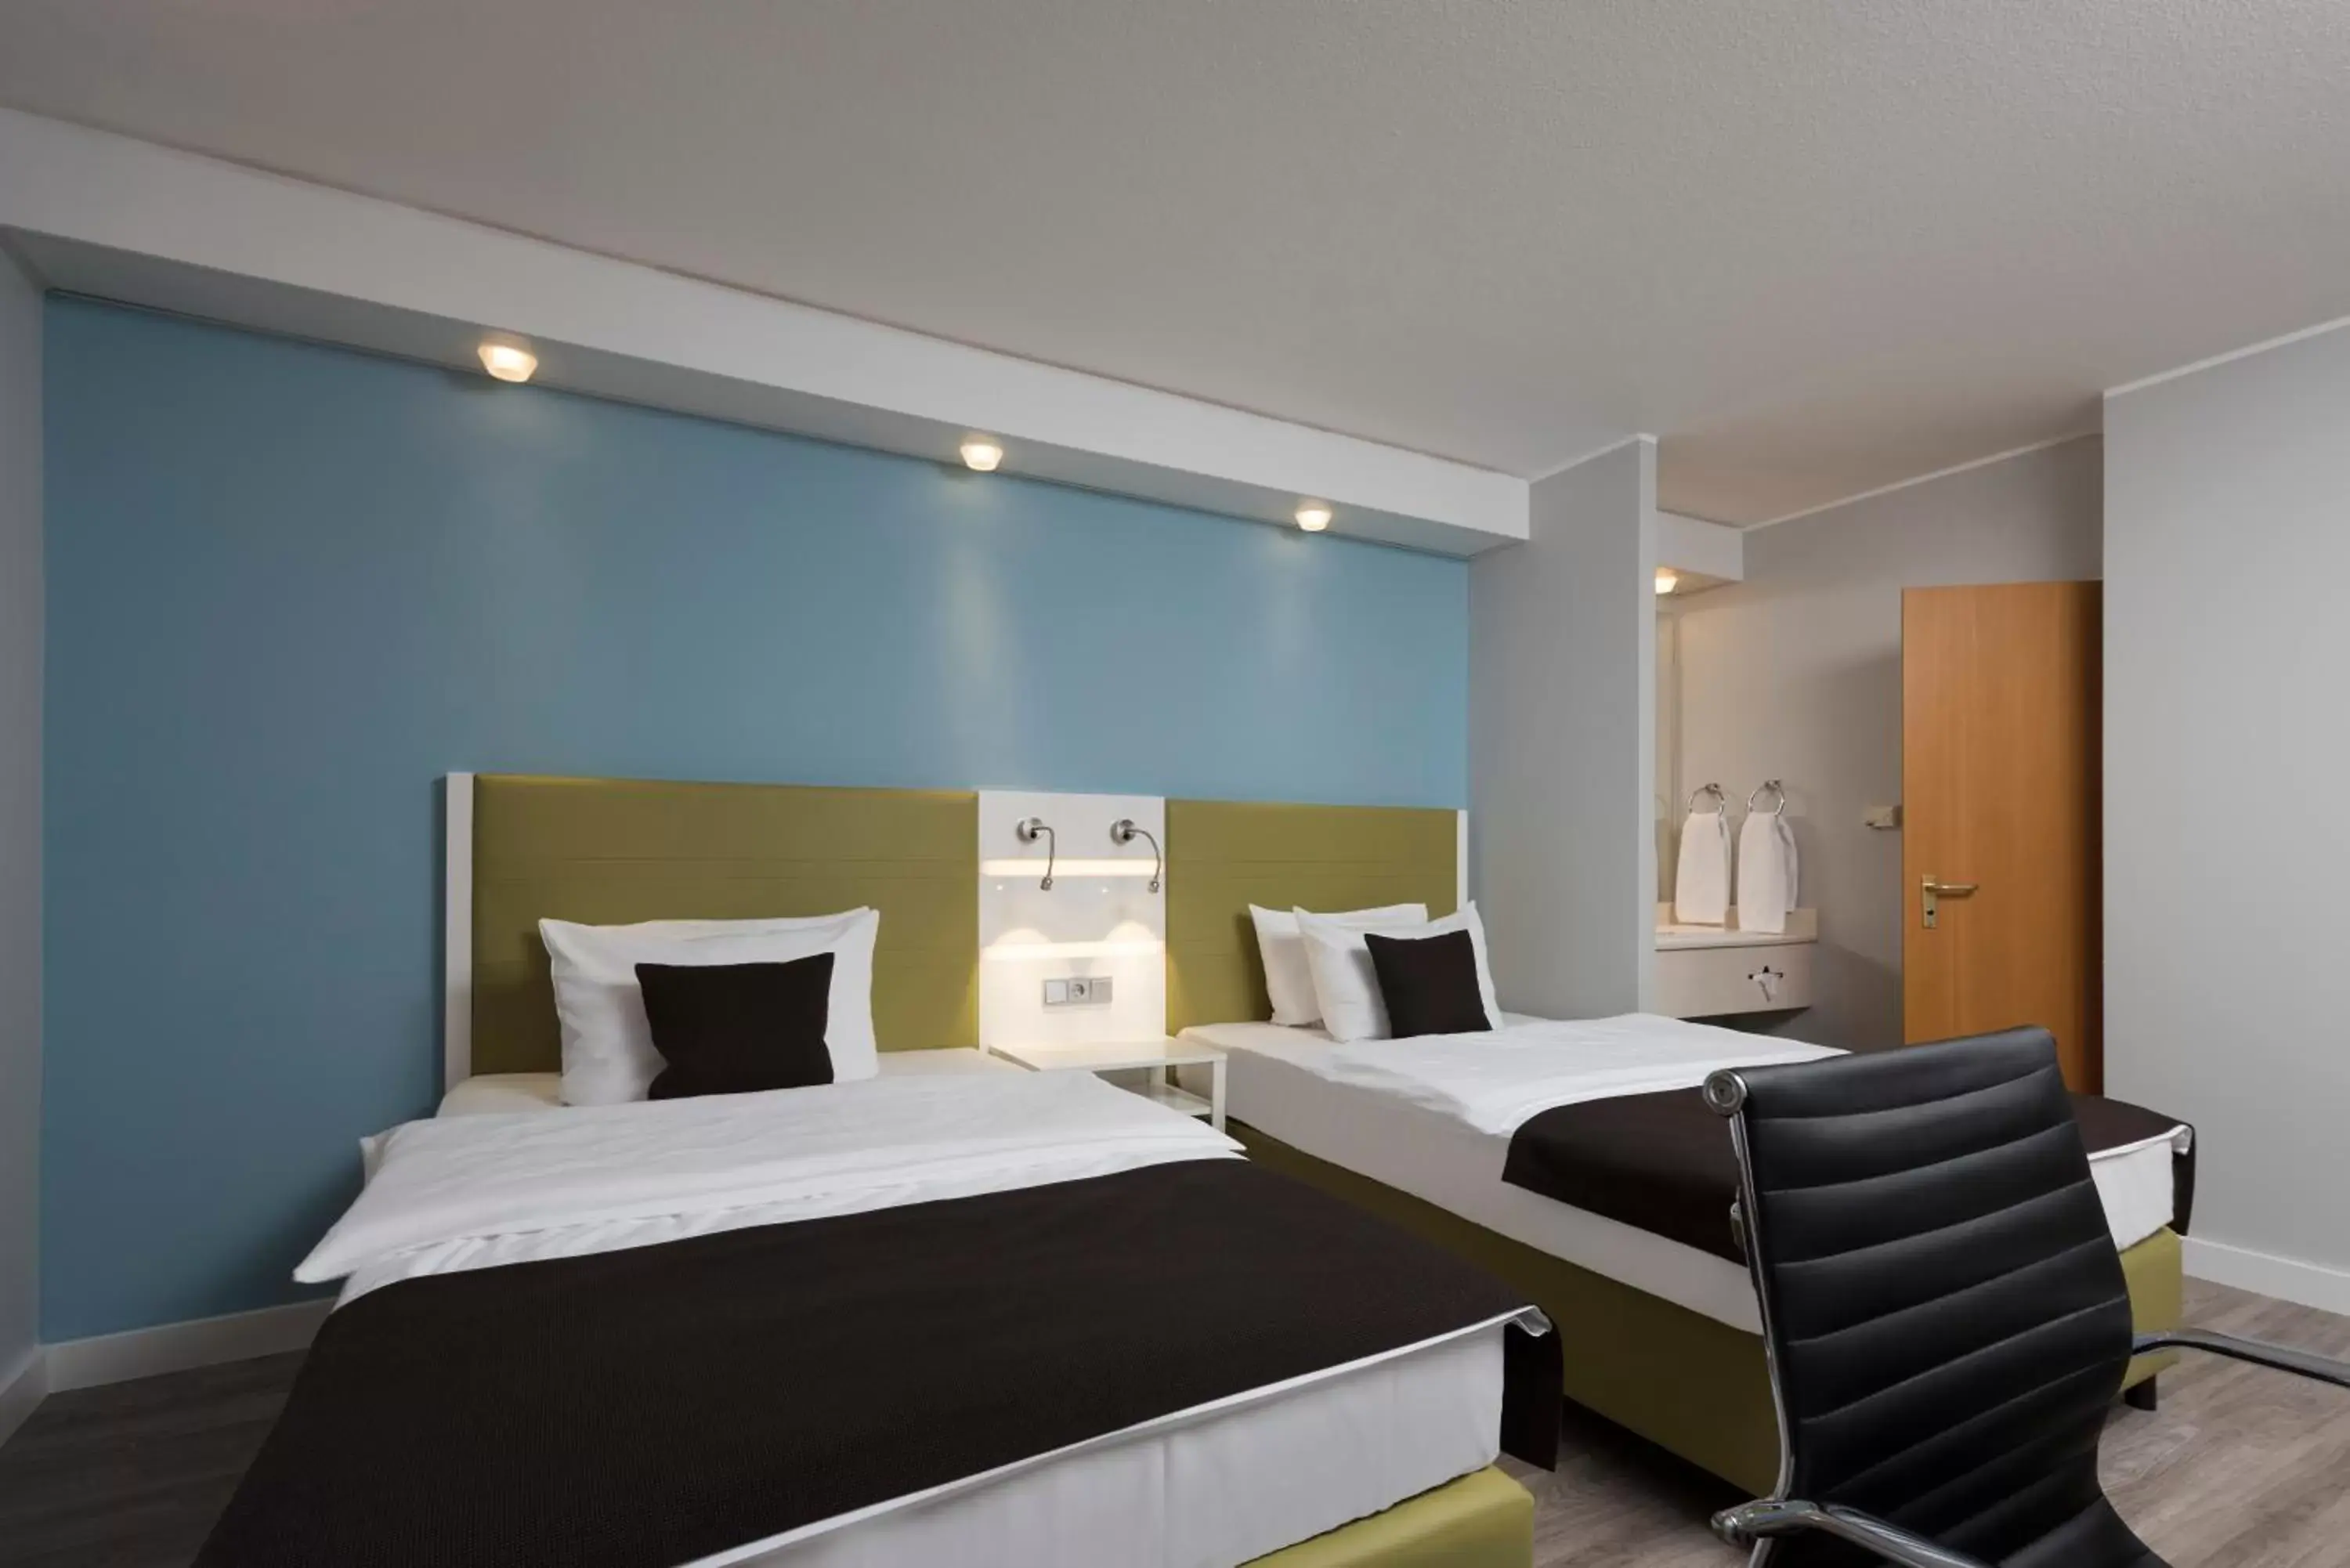 Bed, Room Photo in Best Western Hotel Peine Salzgitter